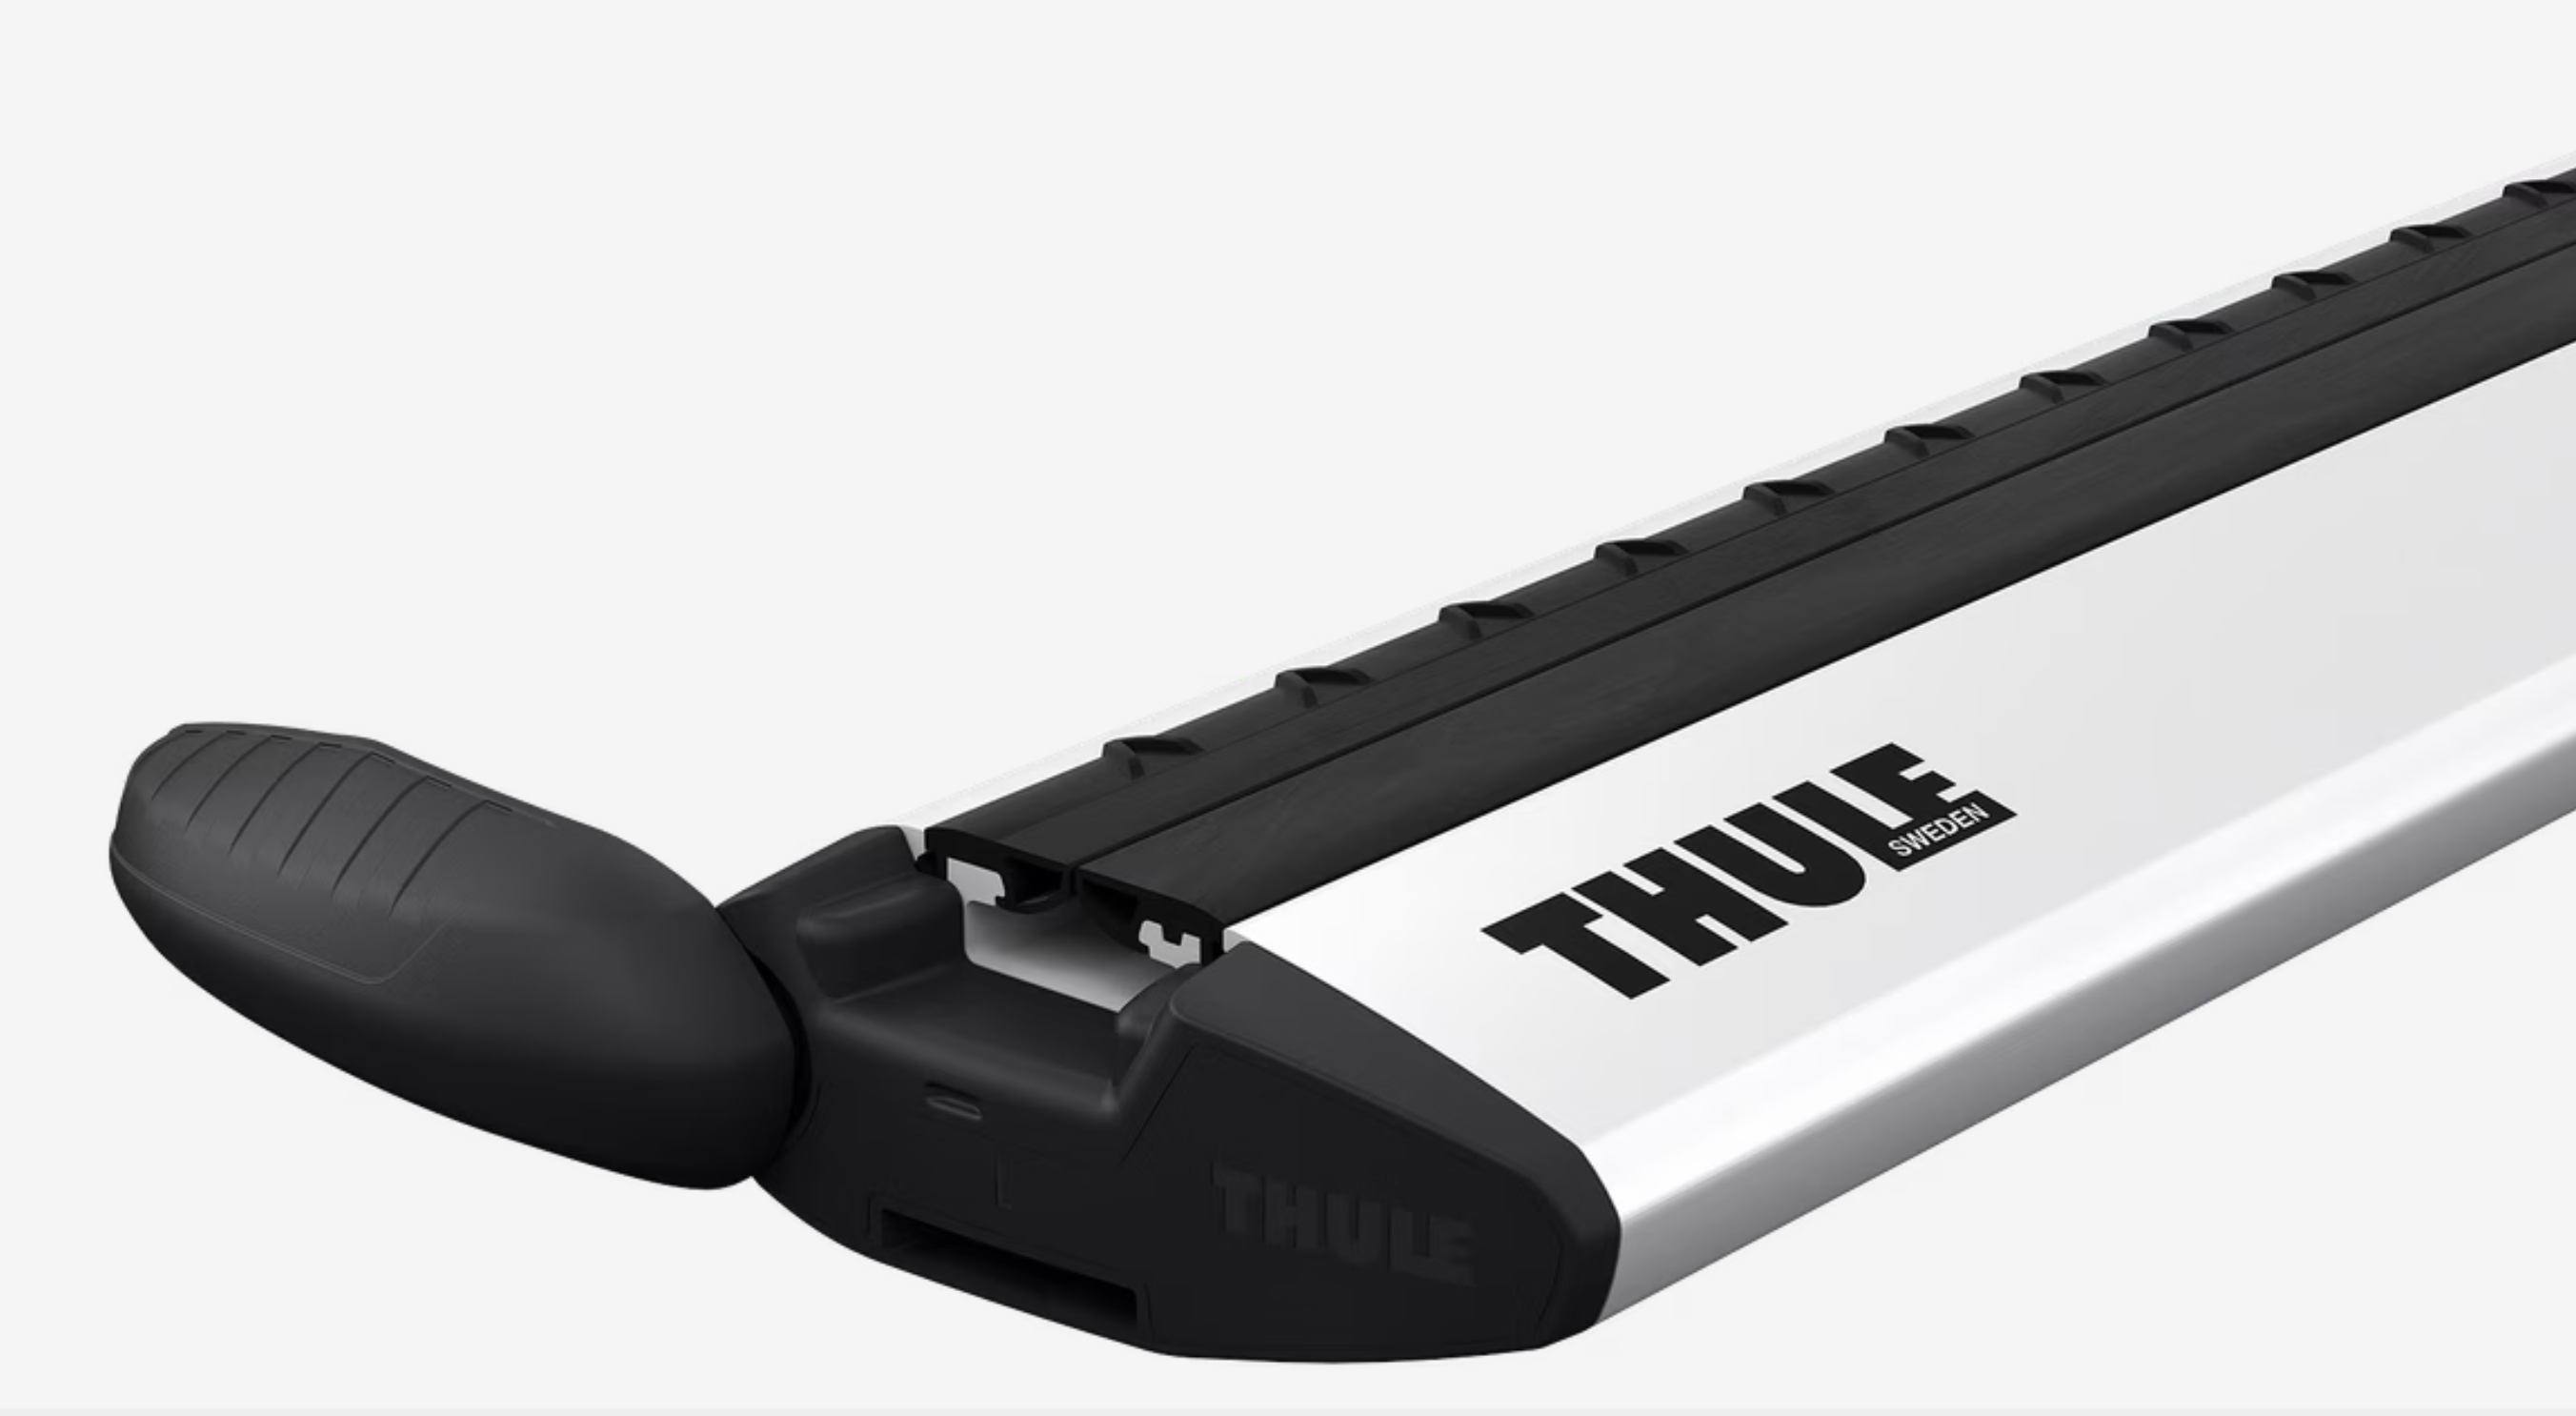 Thule Wingbar Evo 118 cm aluminio (2 barras)